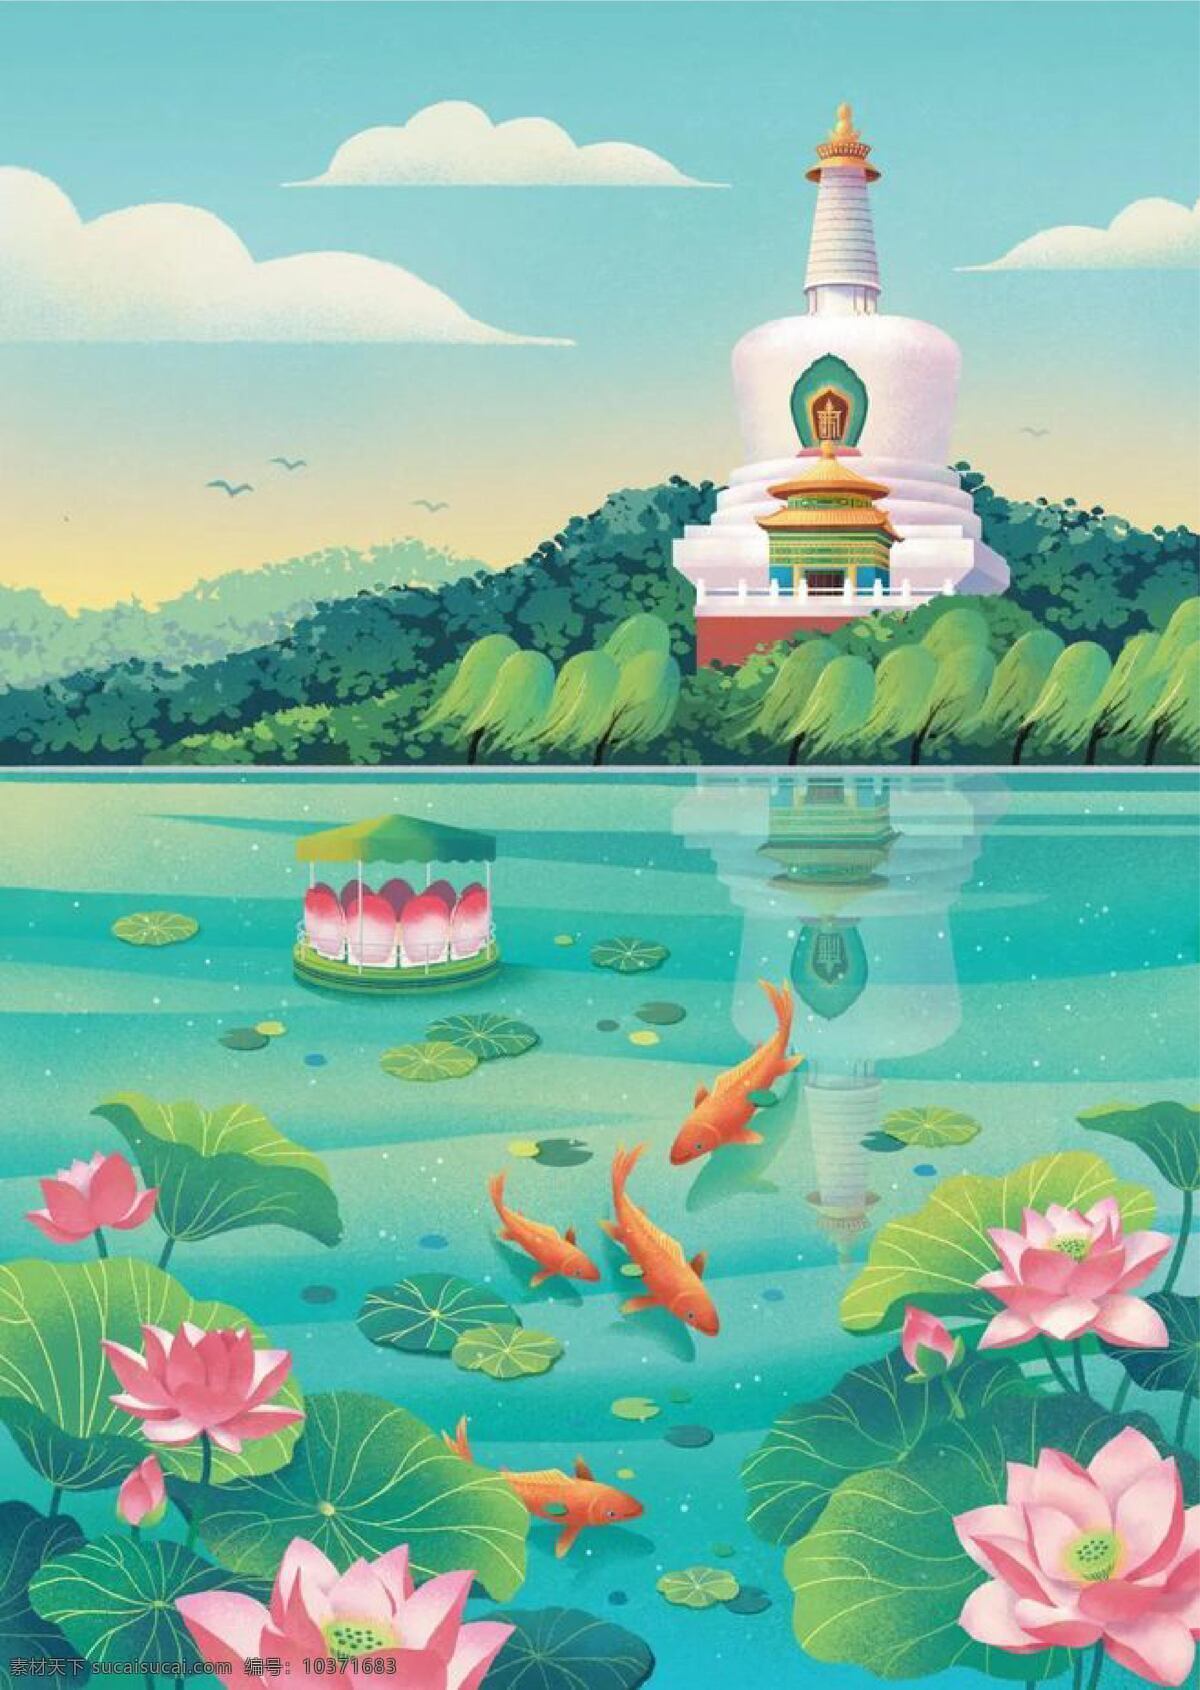 湖图片 圣诞节 中国风 插画 海报 背景 元素 动漫动画 风景漫画